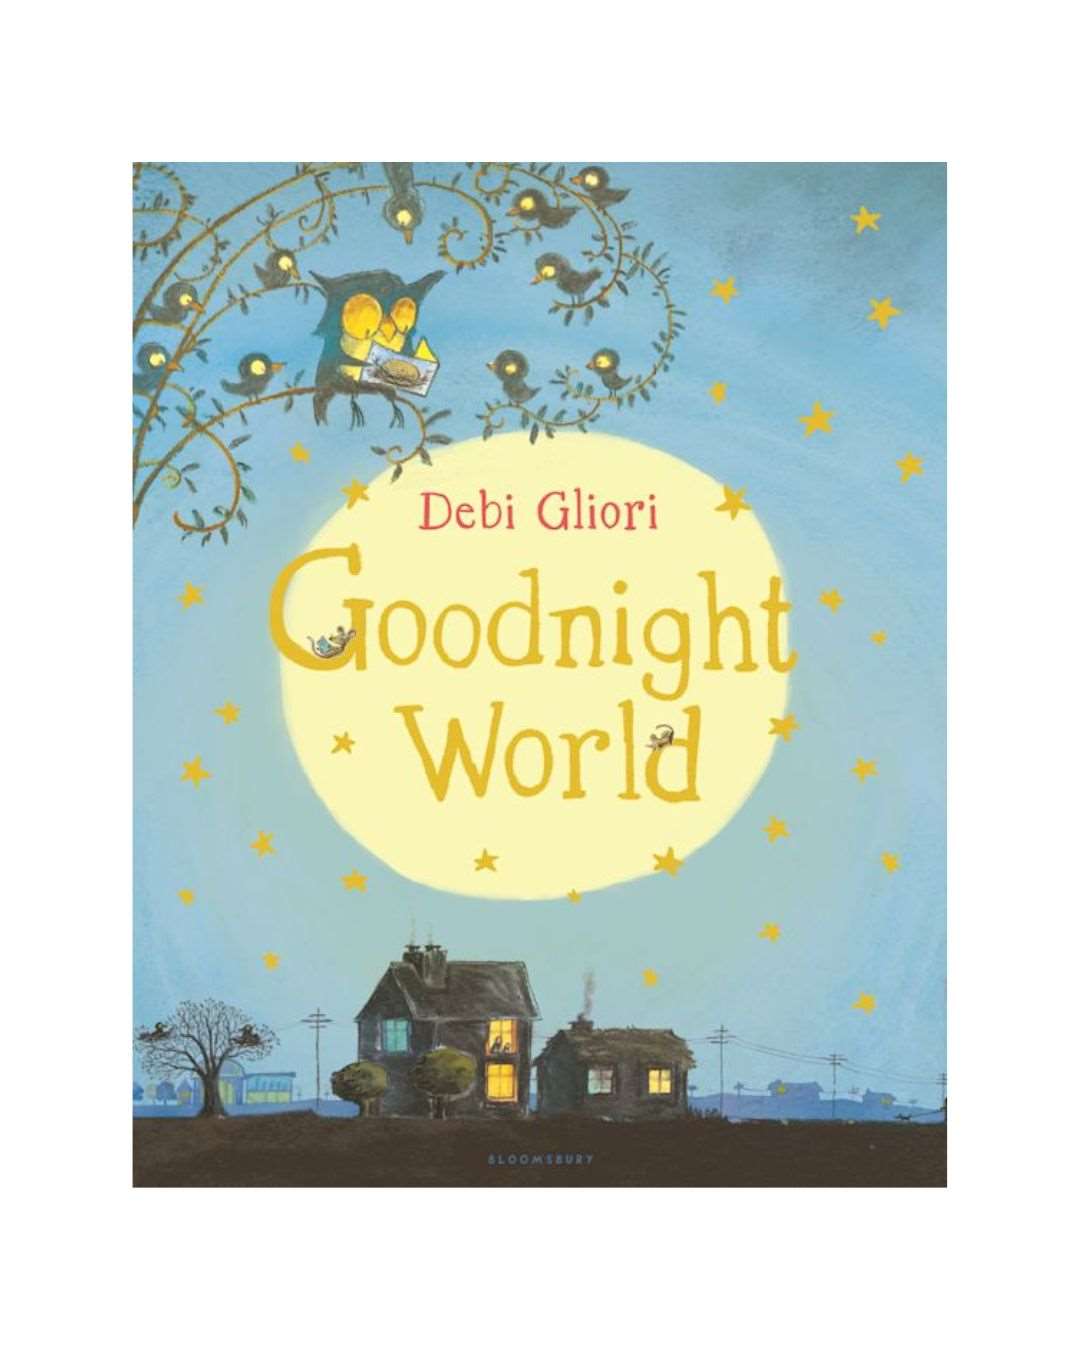 Goodnight World by Debi Gliori - Original